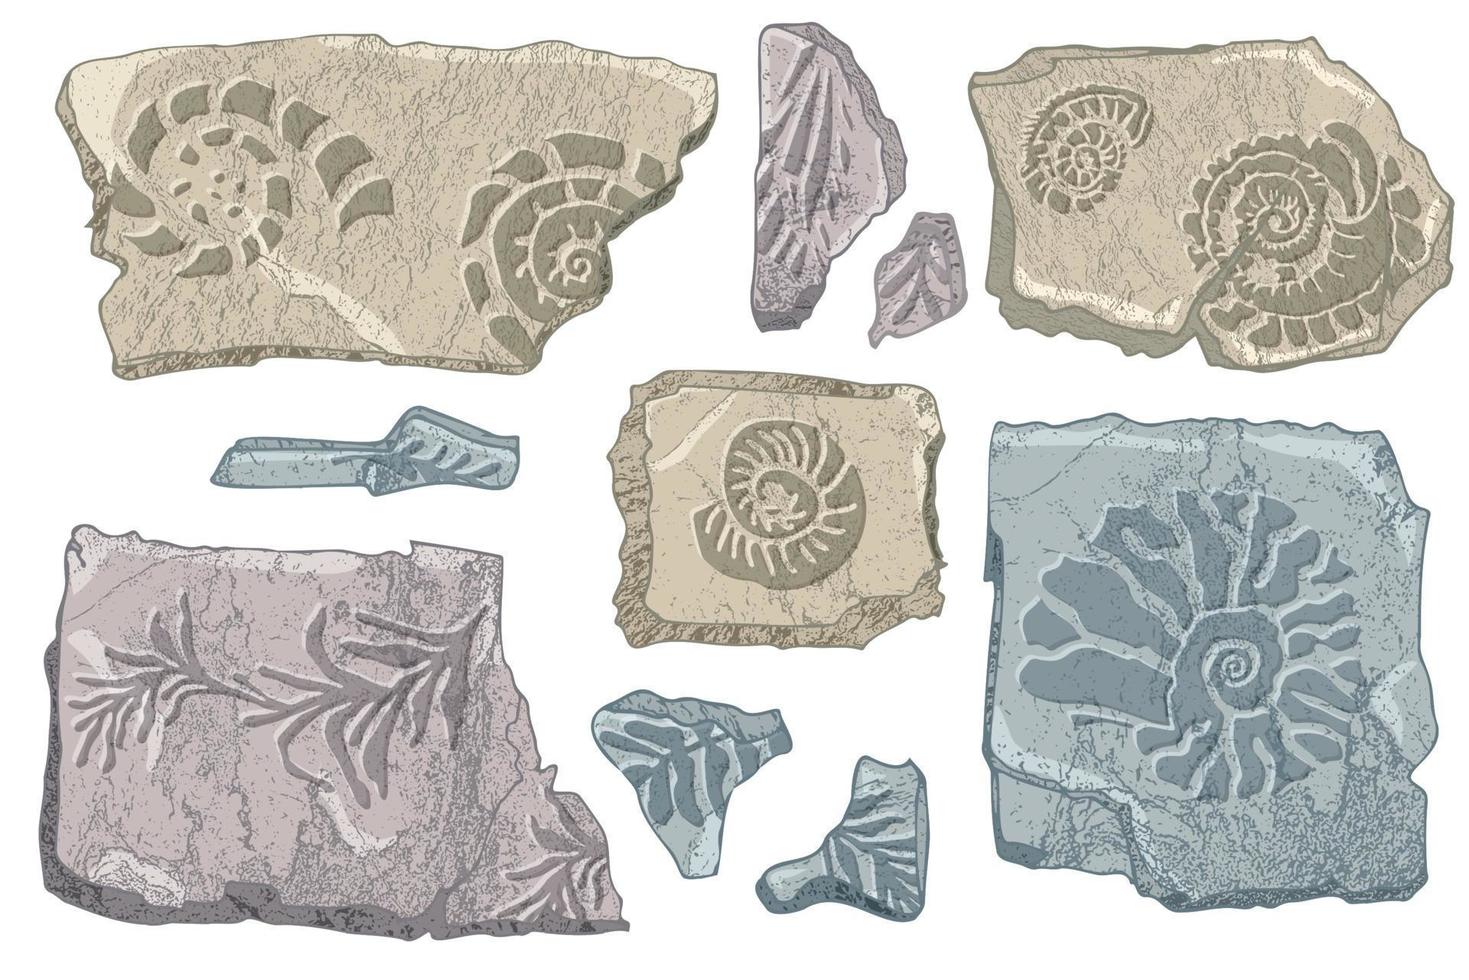 conjunto de pedras conchas e plantas mão desenhada concha do oceano ou concha molusco vieira mar animal subaquático fóssil náutico e aquário, tema marinho. ilustração vetorial vetor